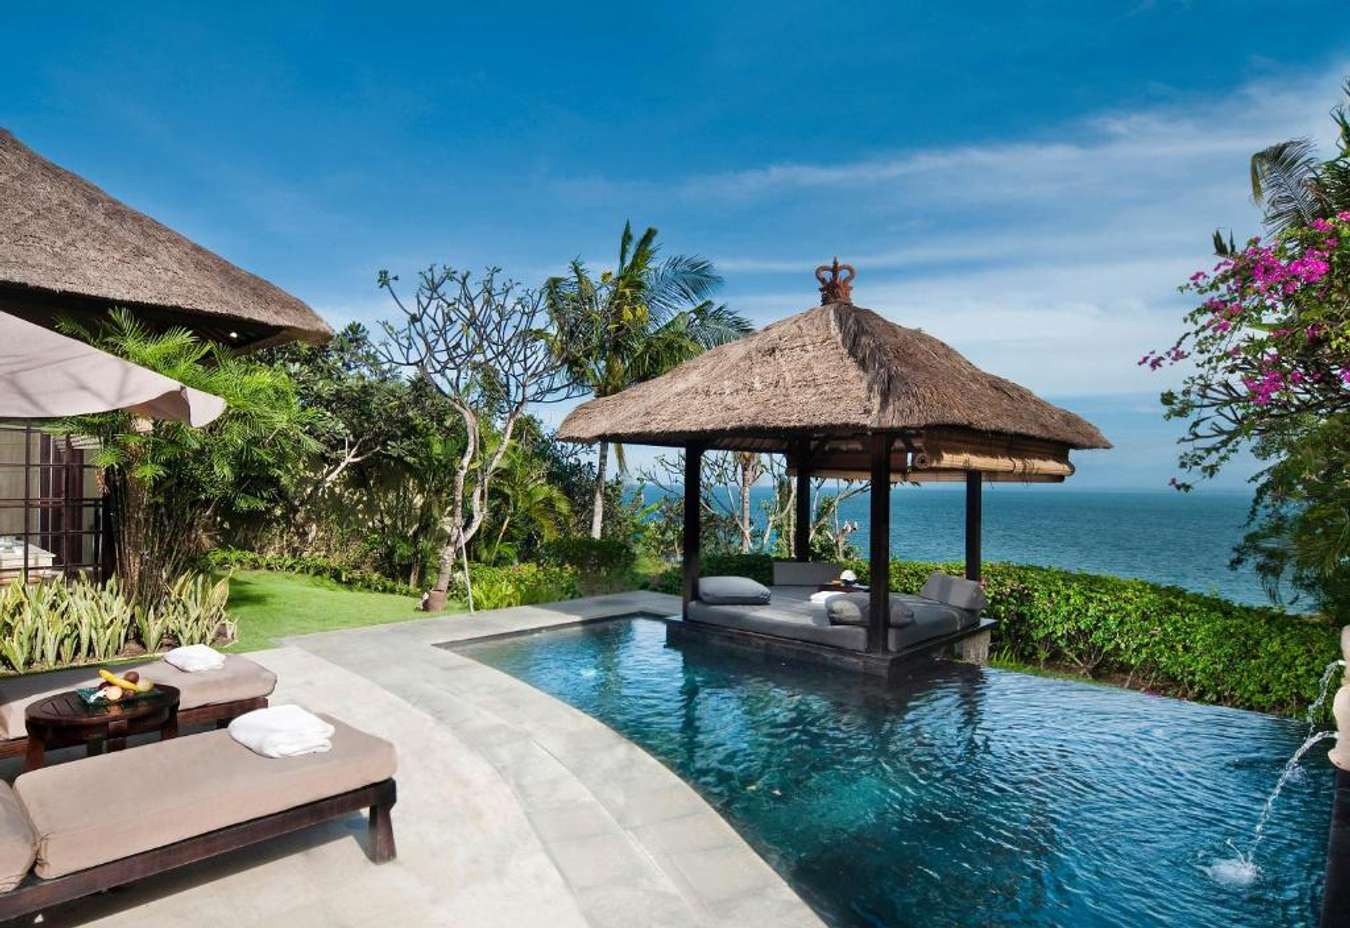 AYANA Resort Bali - Resorts in Bali